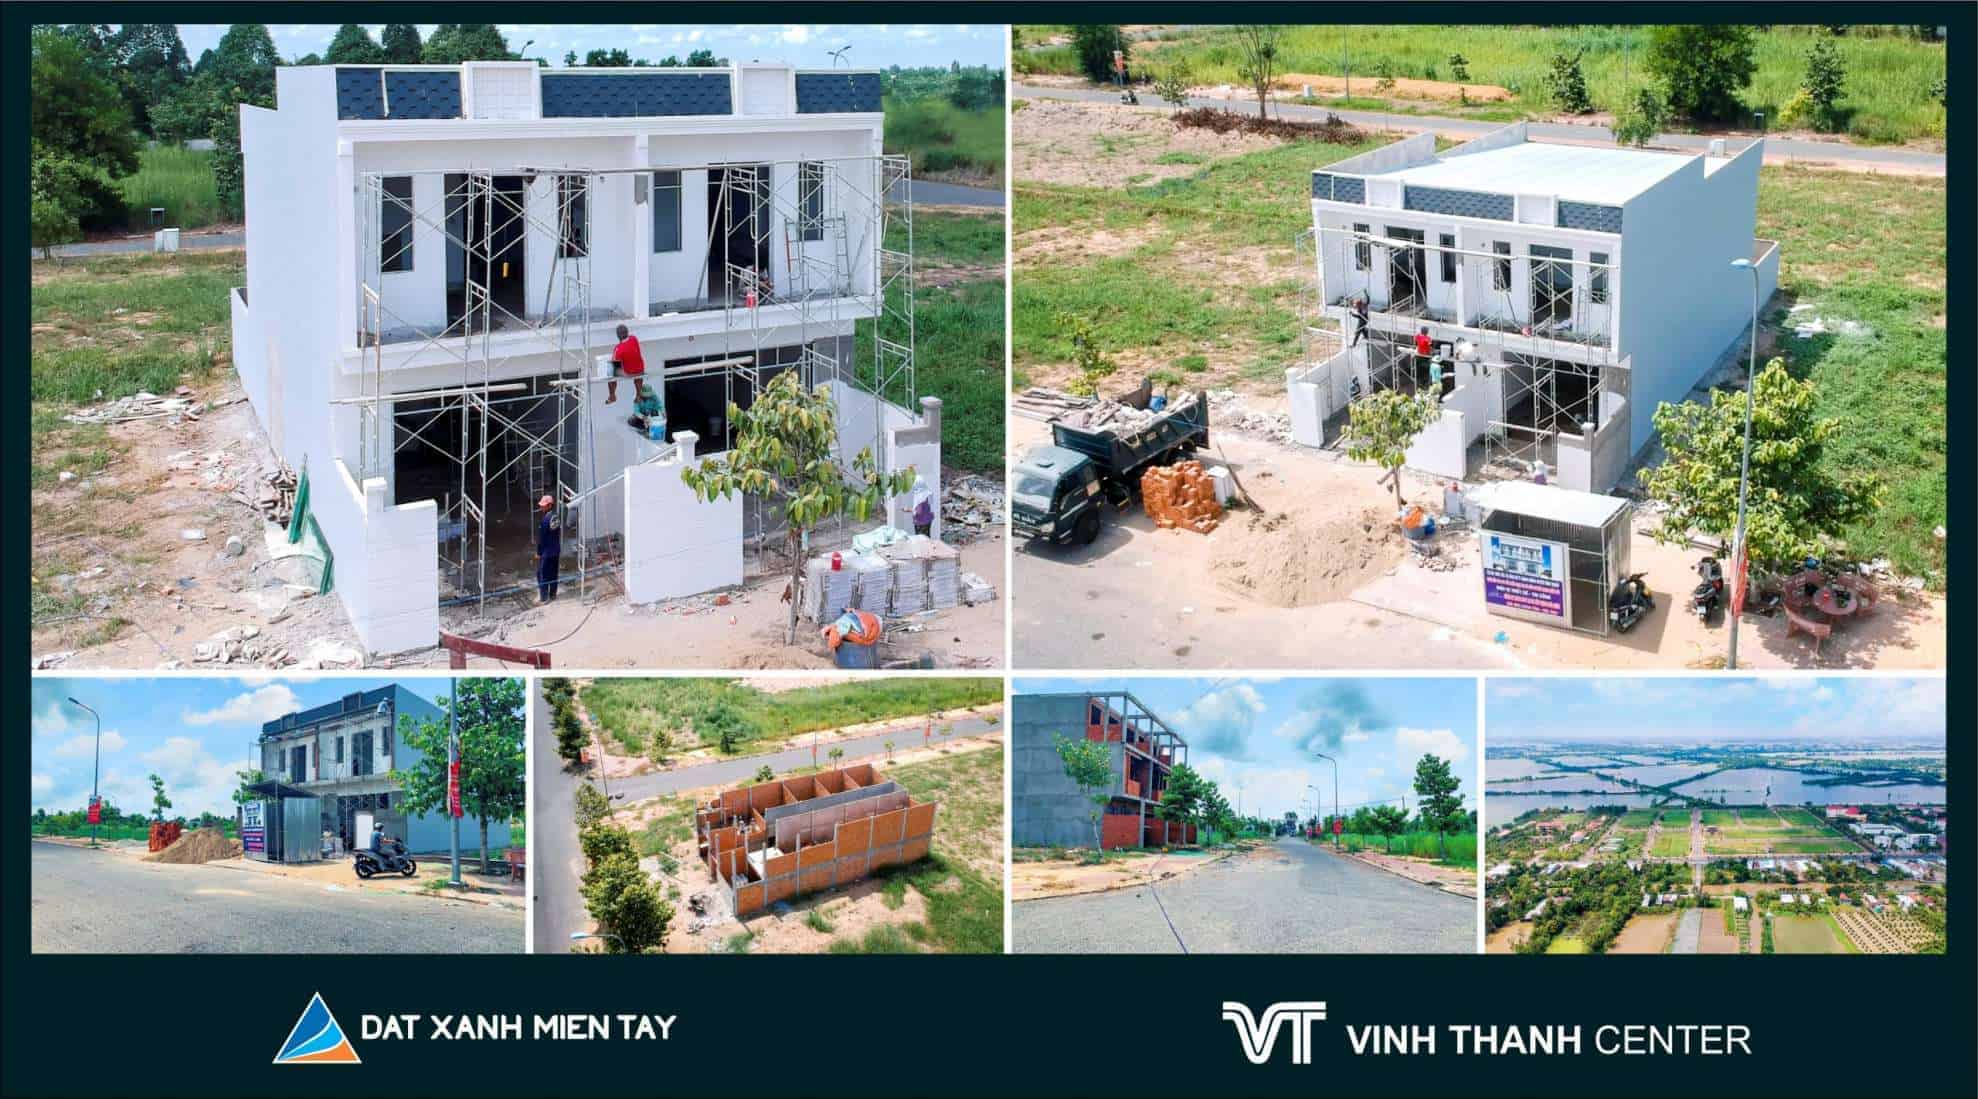 Khách hàng tích cực mua đất cất nhà tại Vĩnh Thạnh để đón đầu cao tốc Lộ Tẻ - Rạch sỏi sắp hoàn thành trong tháng 9 -2020 